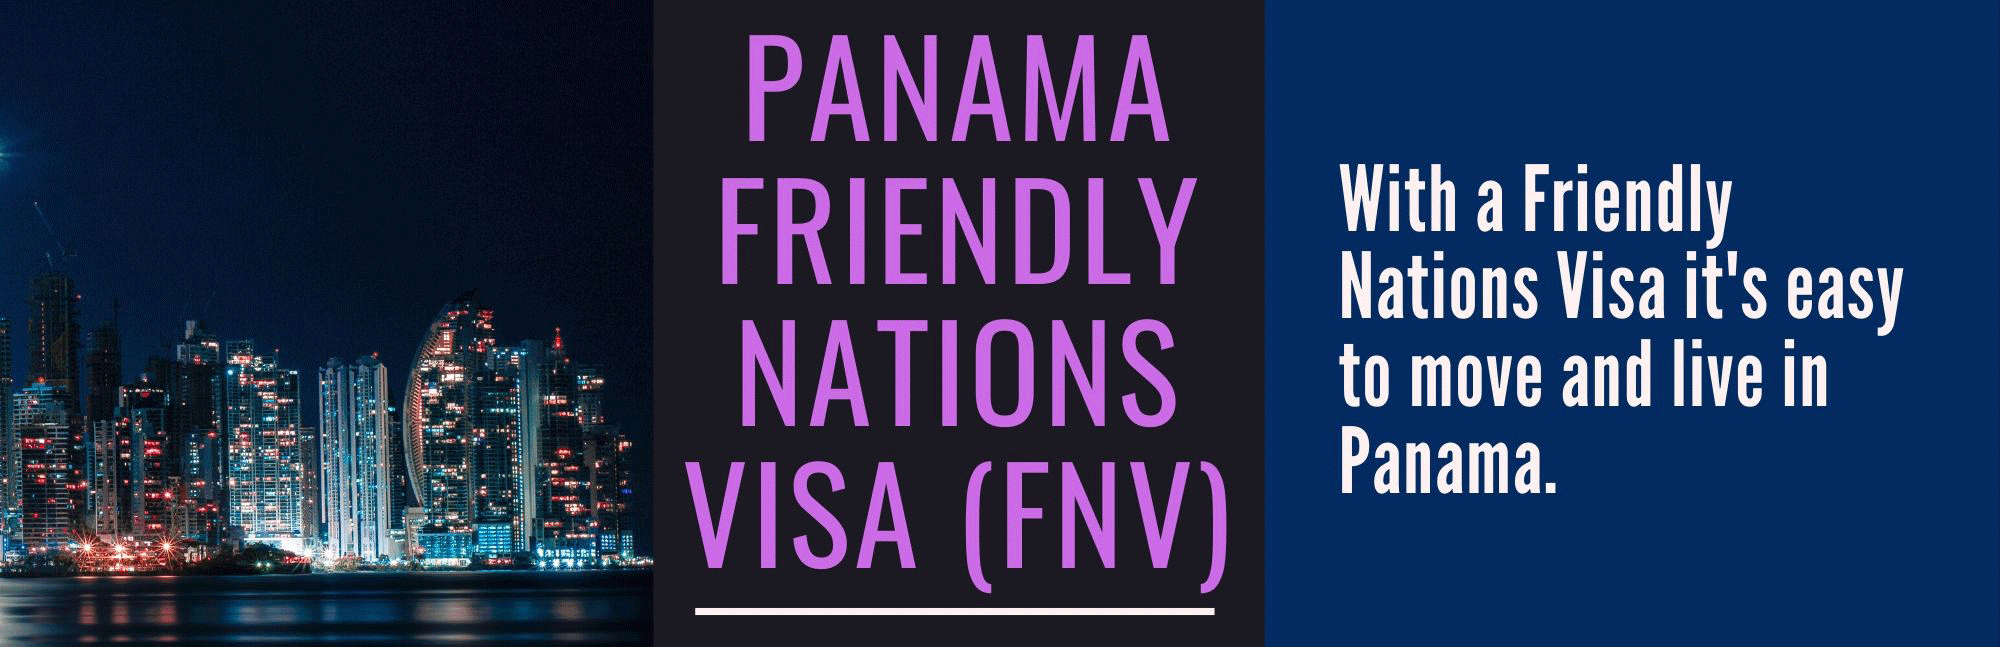 Panama Friendly Nations Visa